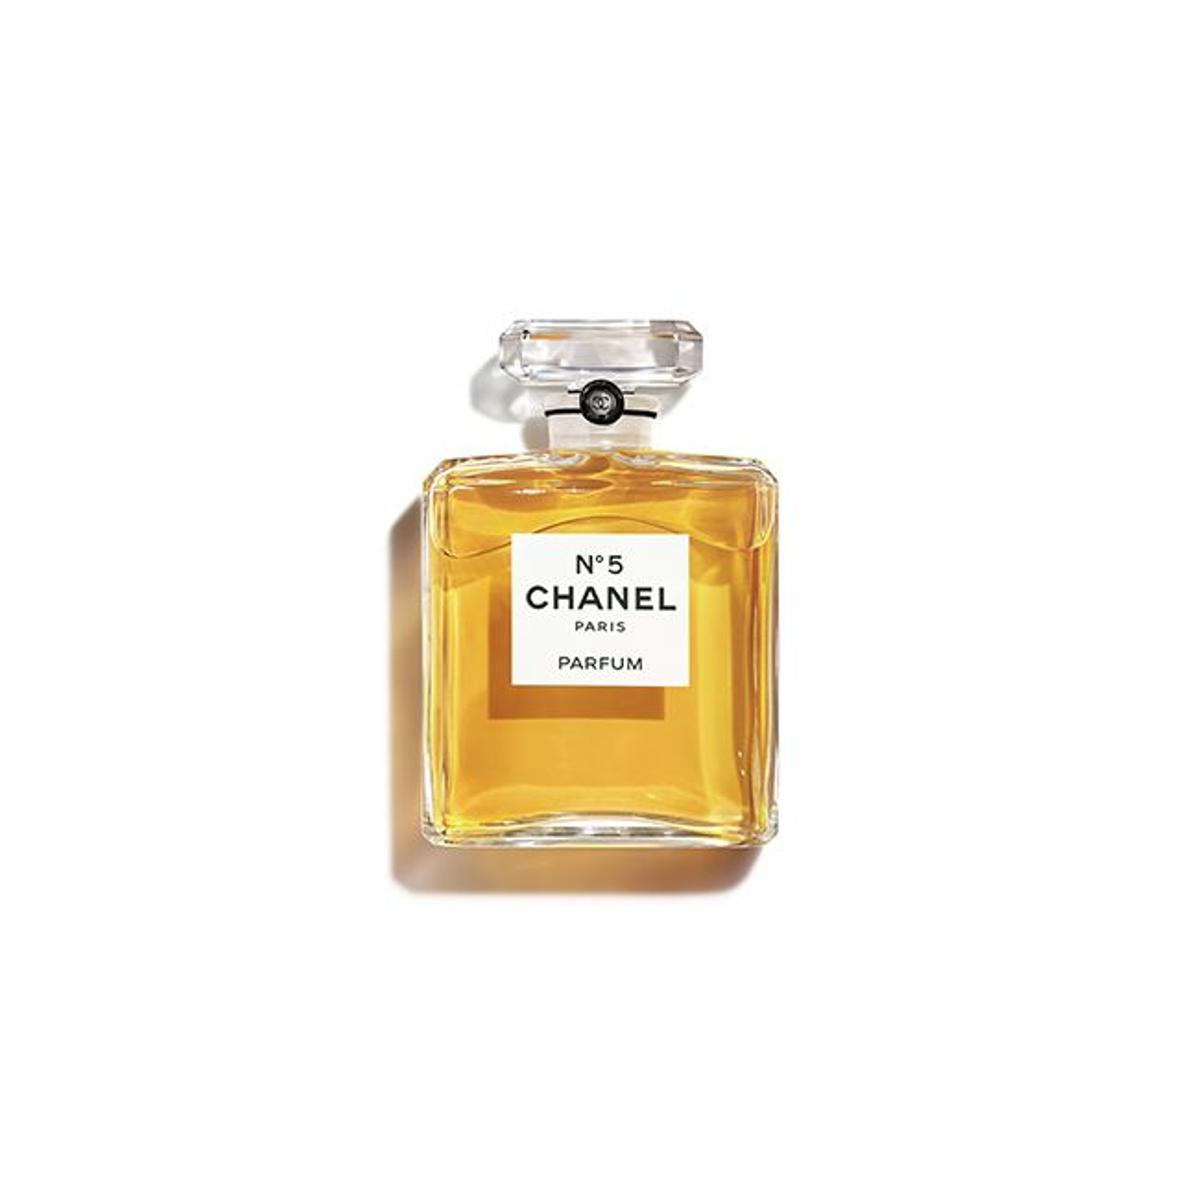 Chanel N°5, de Chanel